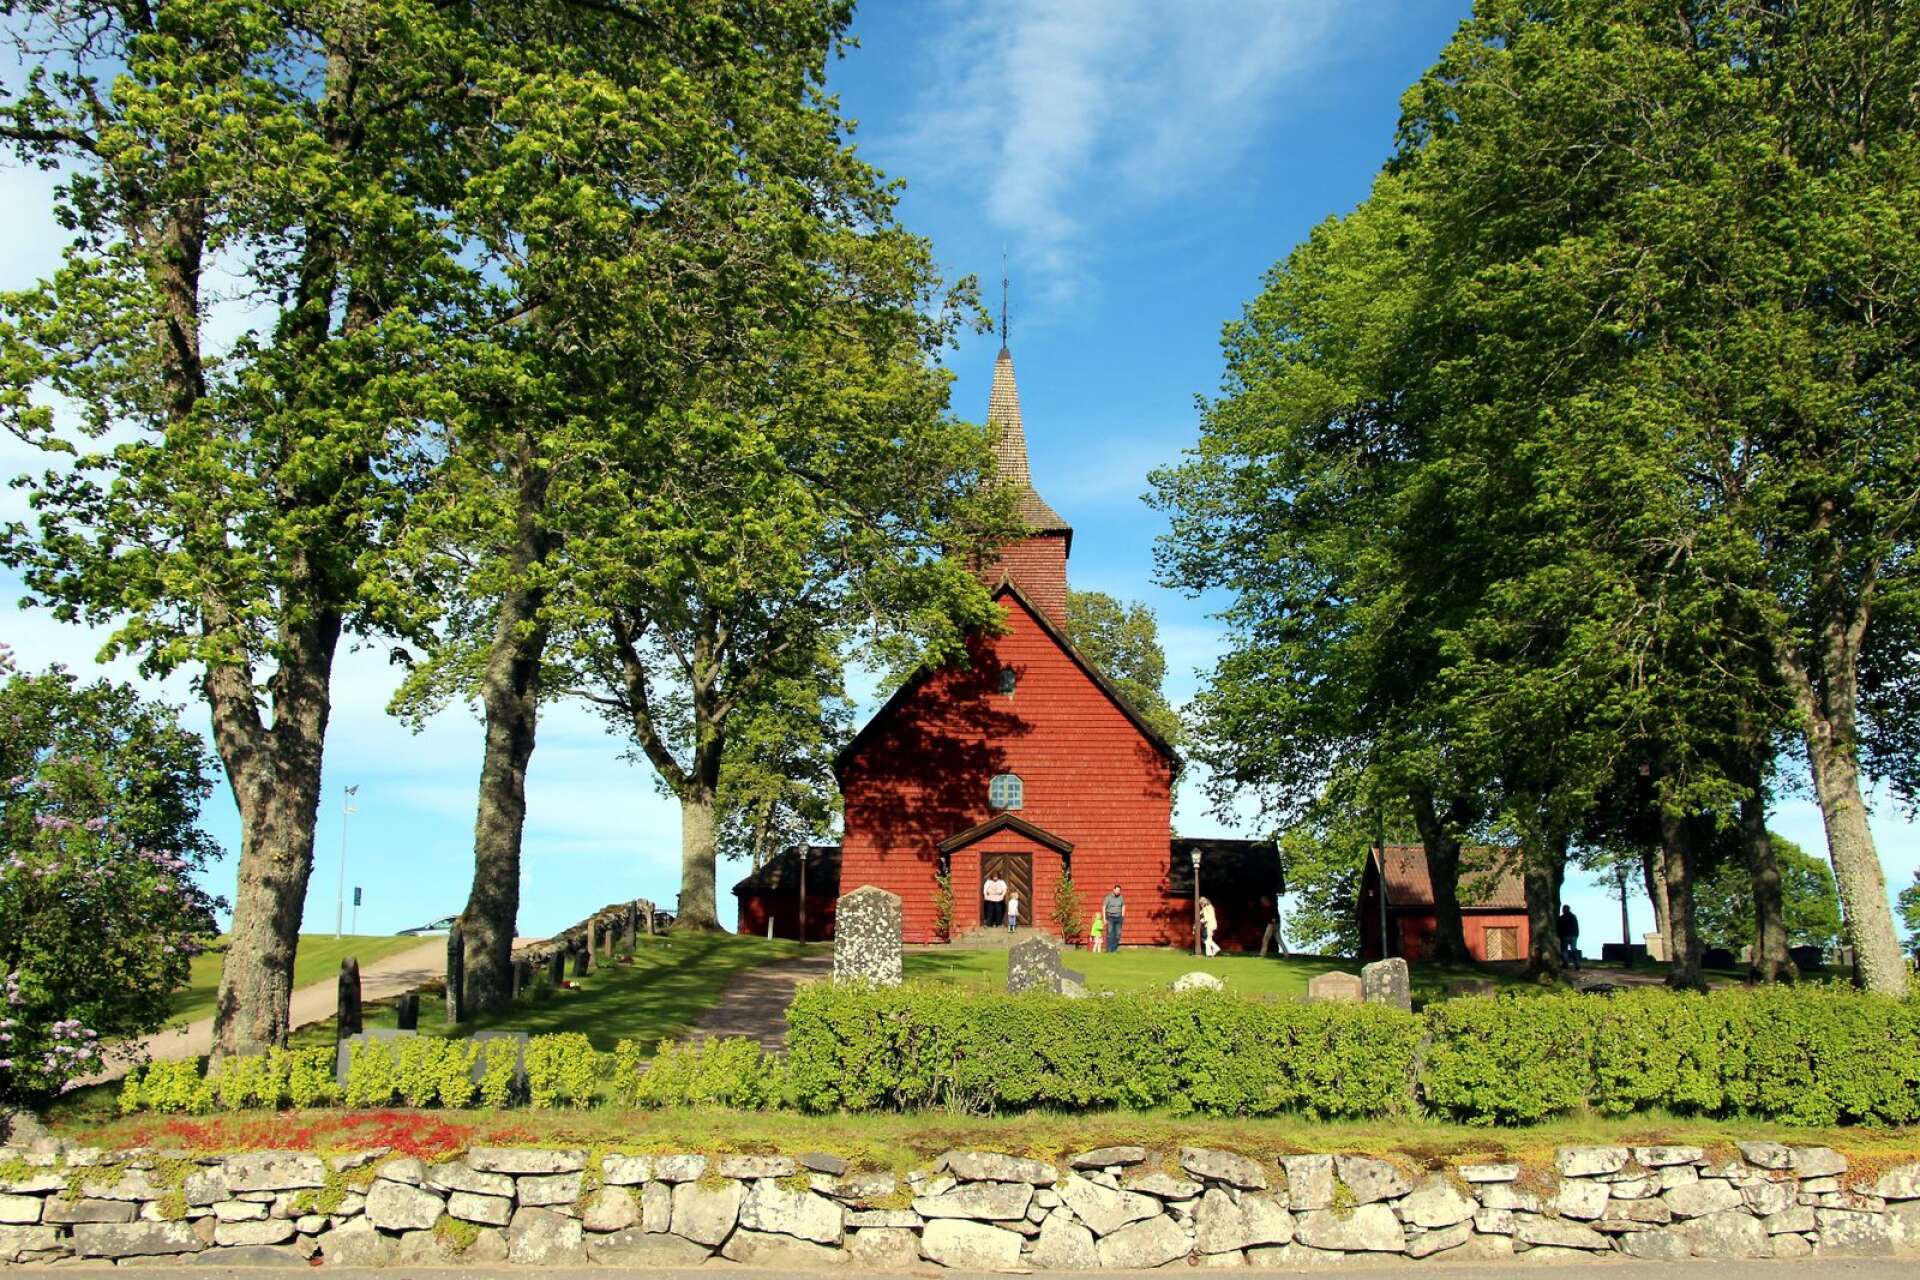 I Älgarås står denne vackra röda träkyrka som troligtvis härstammar från 1200-talet.